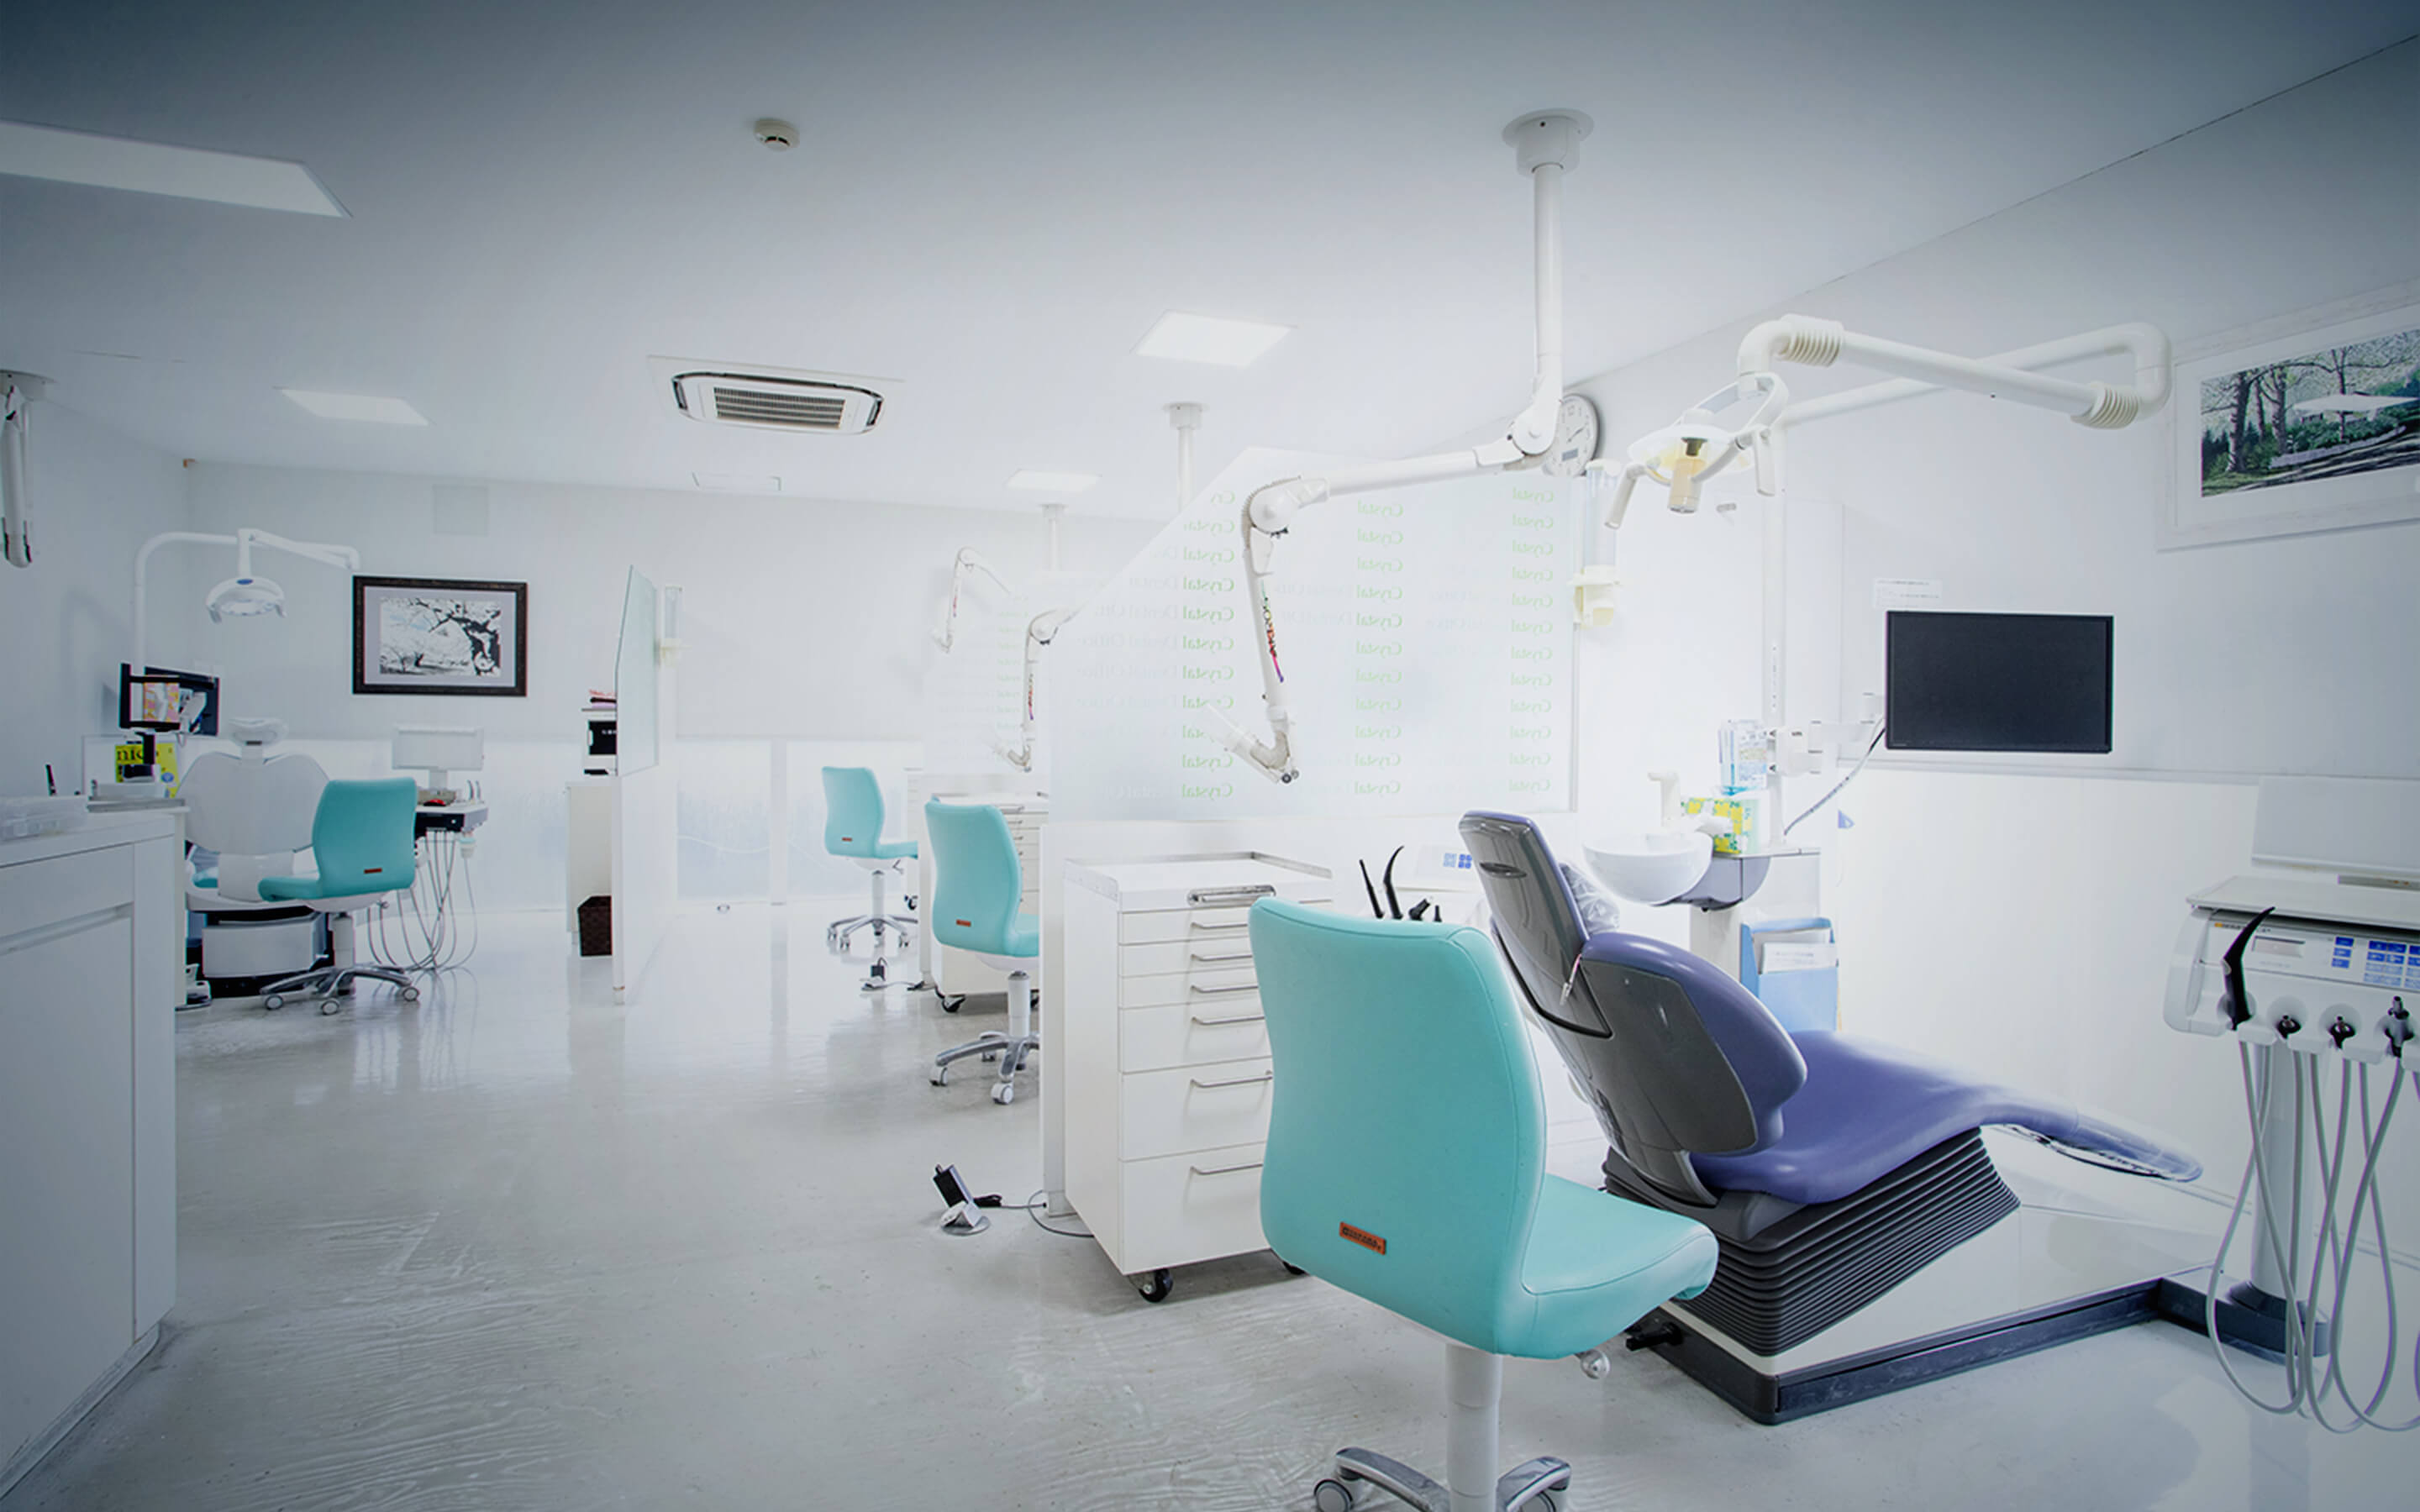 インプラント、矯正、歯周病から虫歯治療まで幅広く 専門性をいかした精密な技術で患者さんに寄り添う誠実な歯科医院